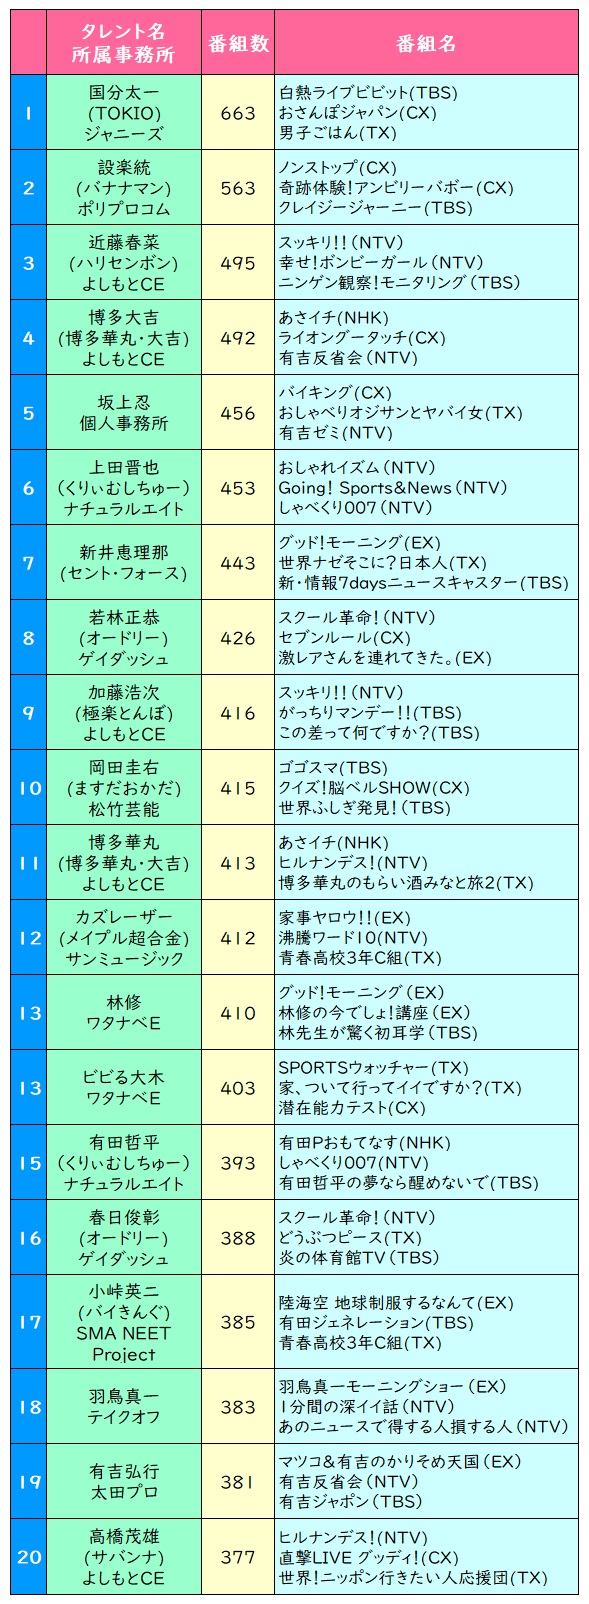 2016ブレイク芸人ランキング 1位はメイプル超合金 Oricon News